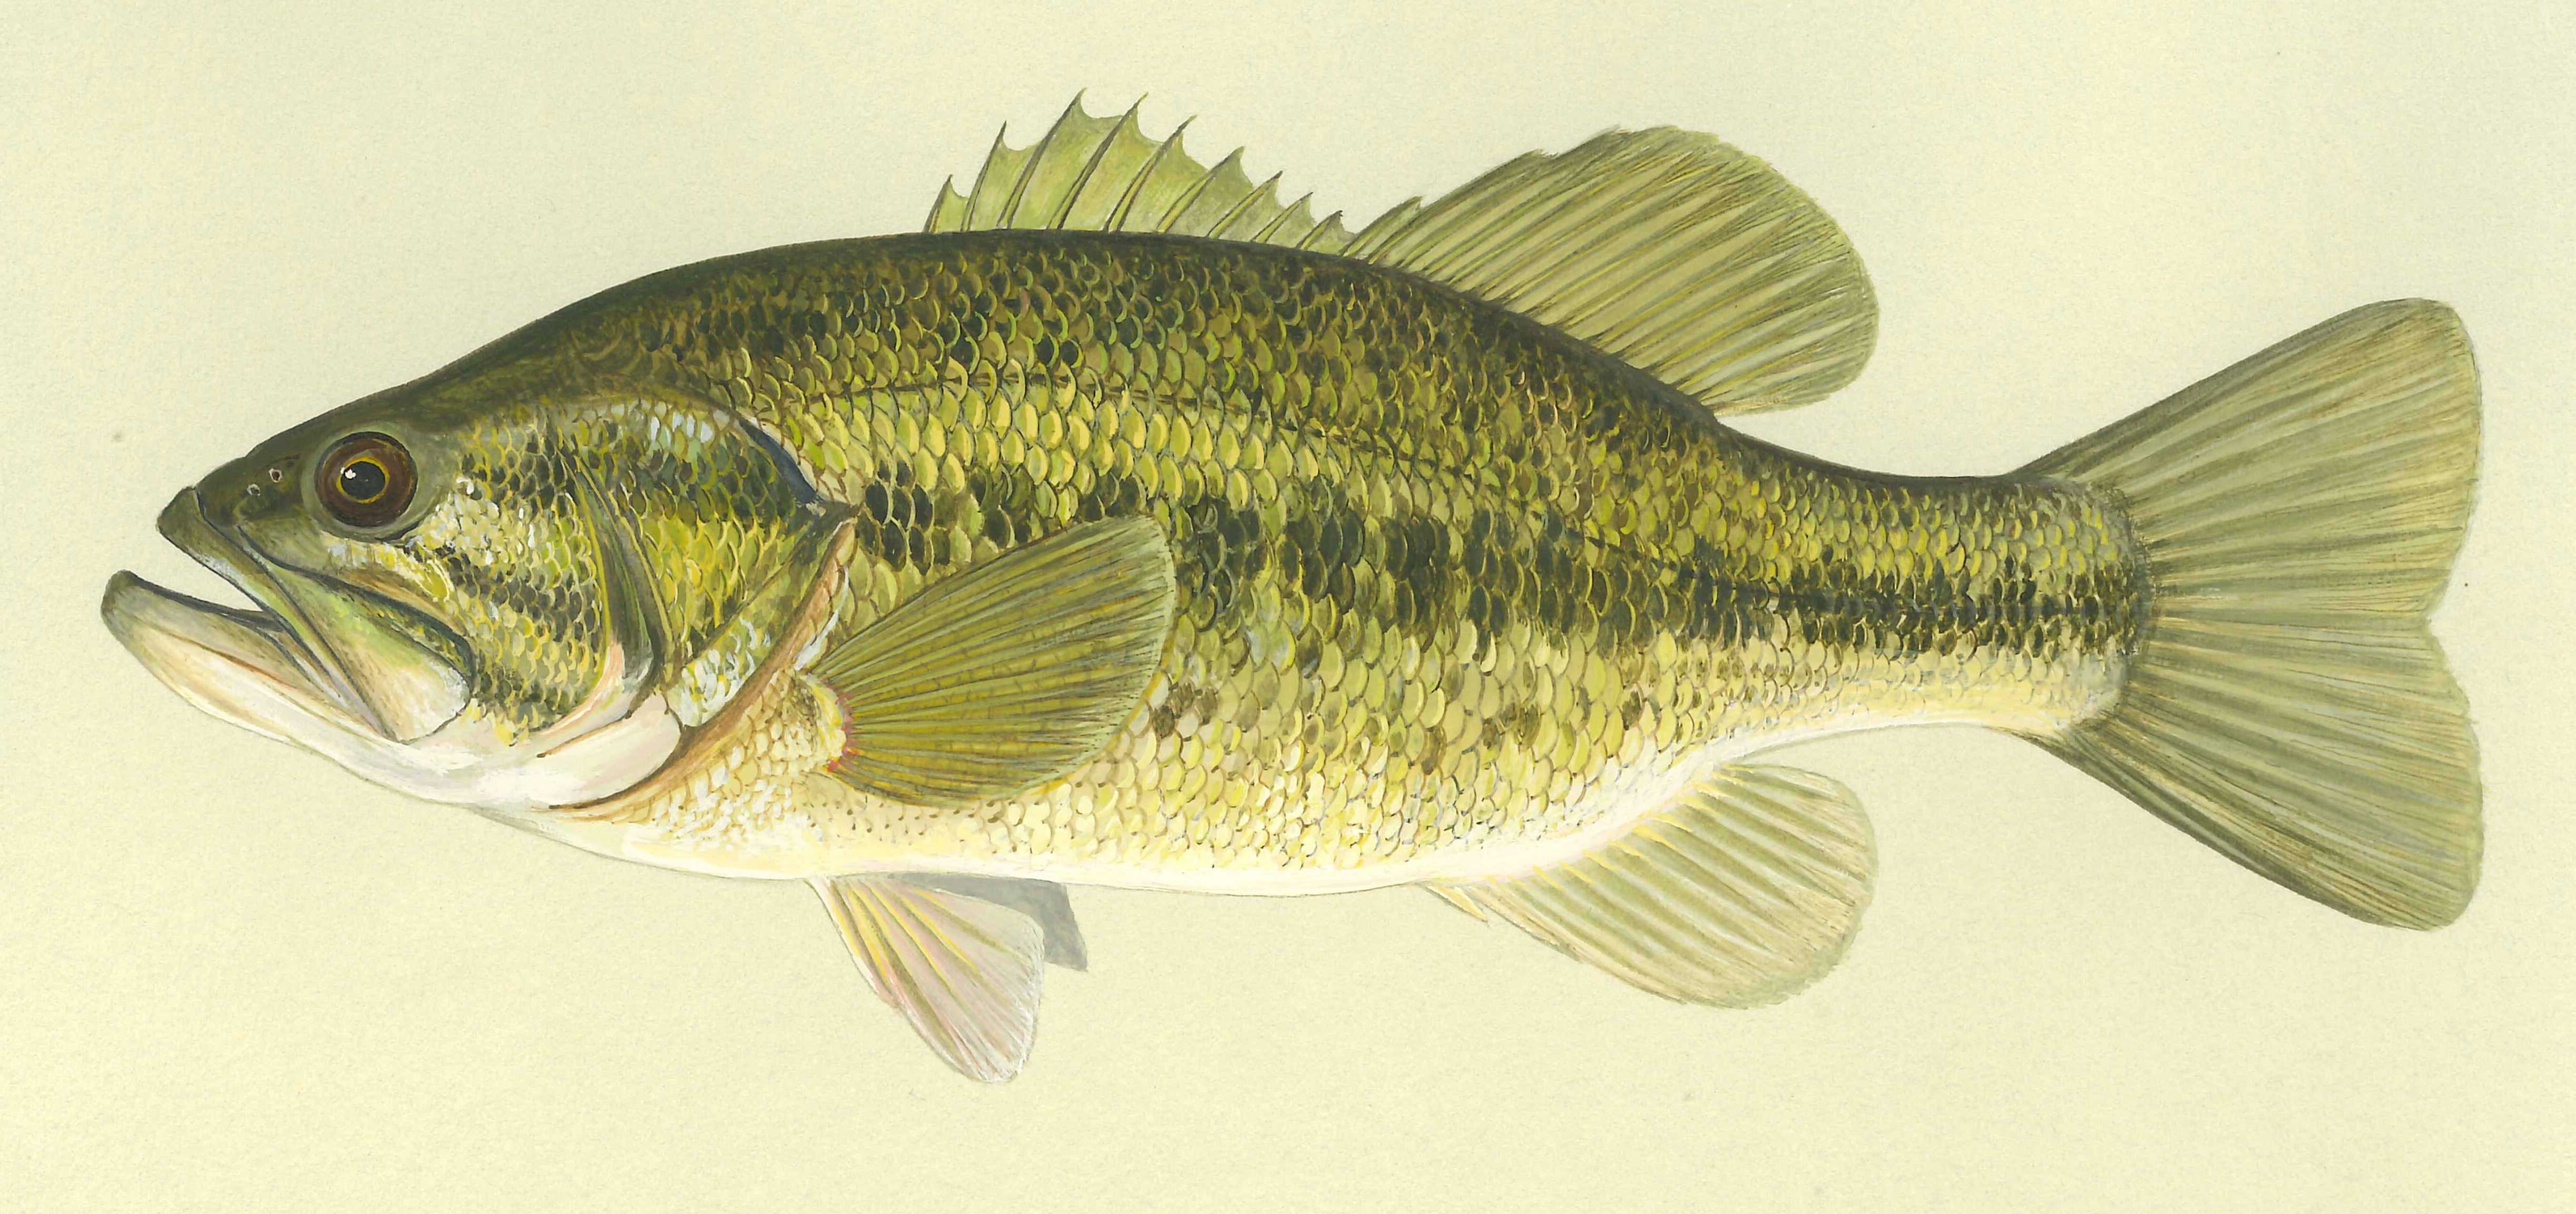 Калико басс фото и описание – каталог рыб, смотреть онлайн